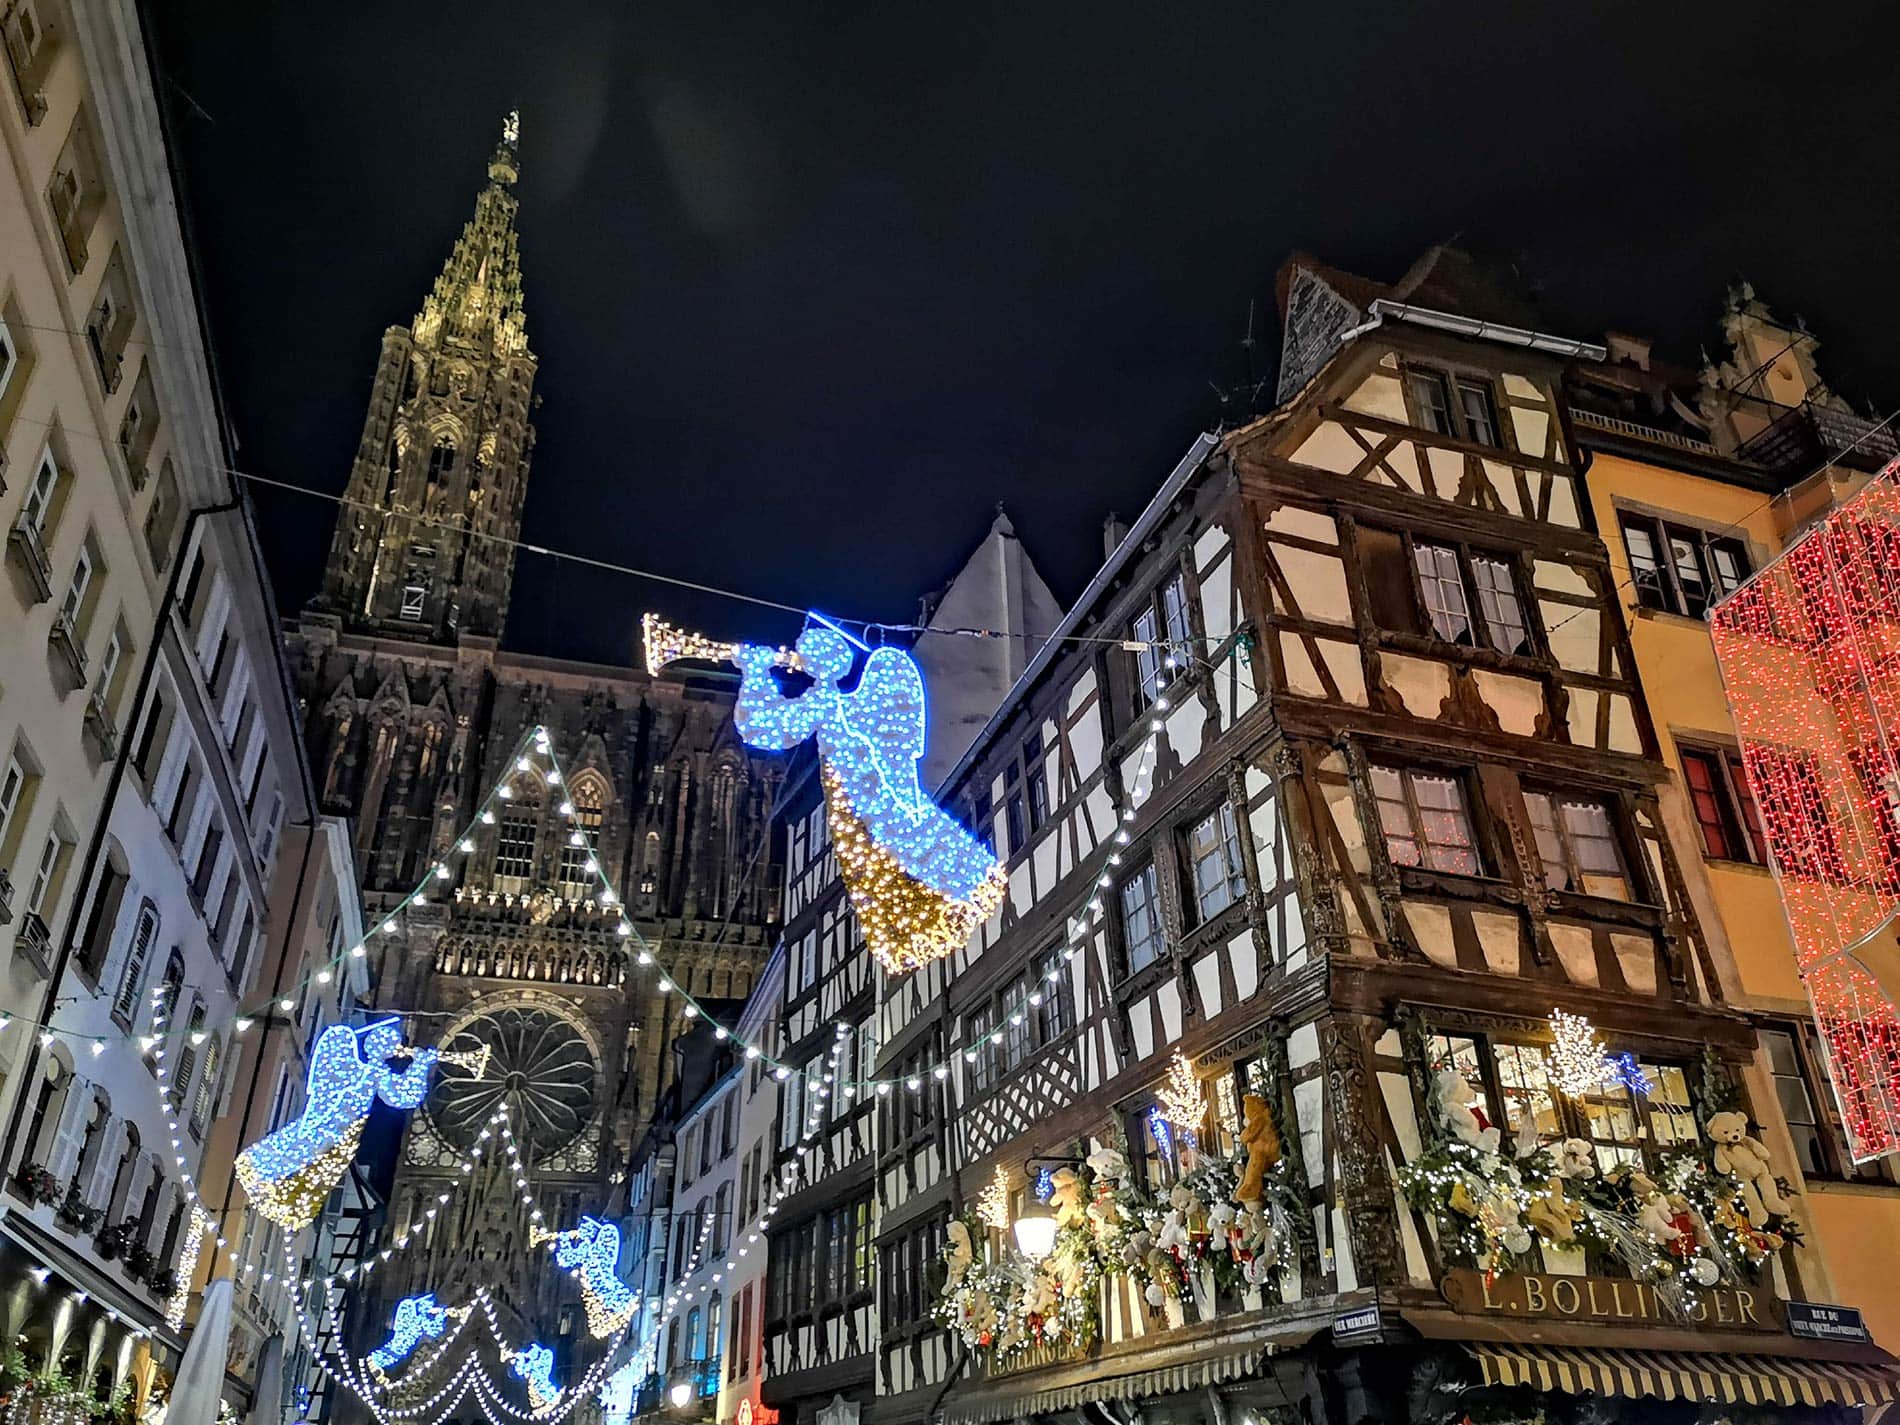 Marché de Noël de Strasbourg